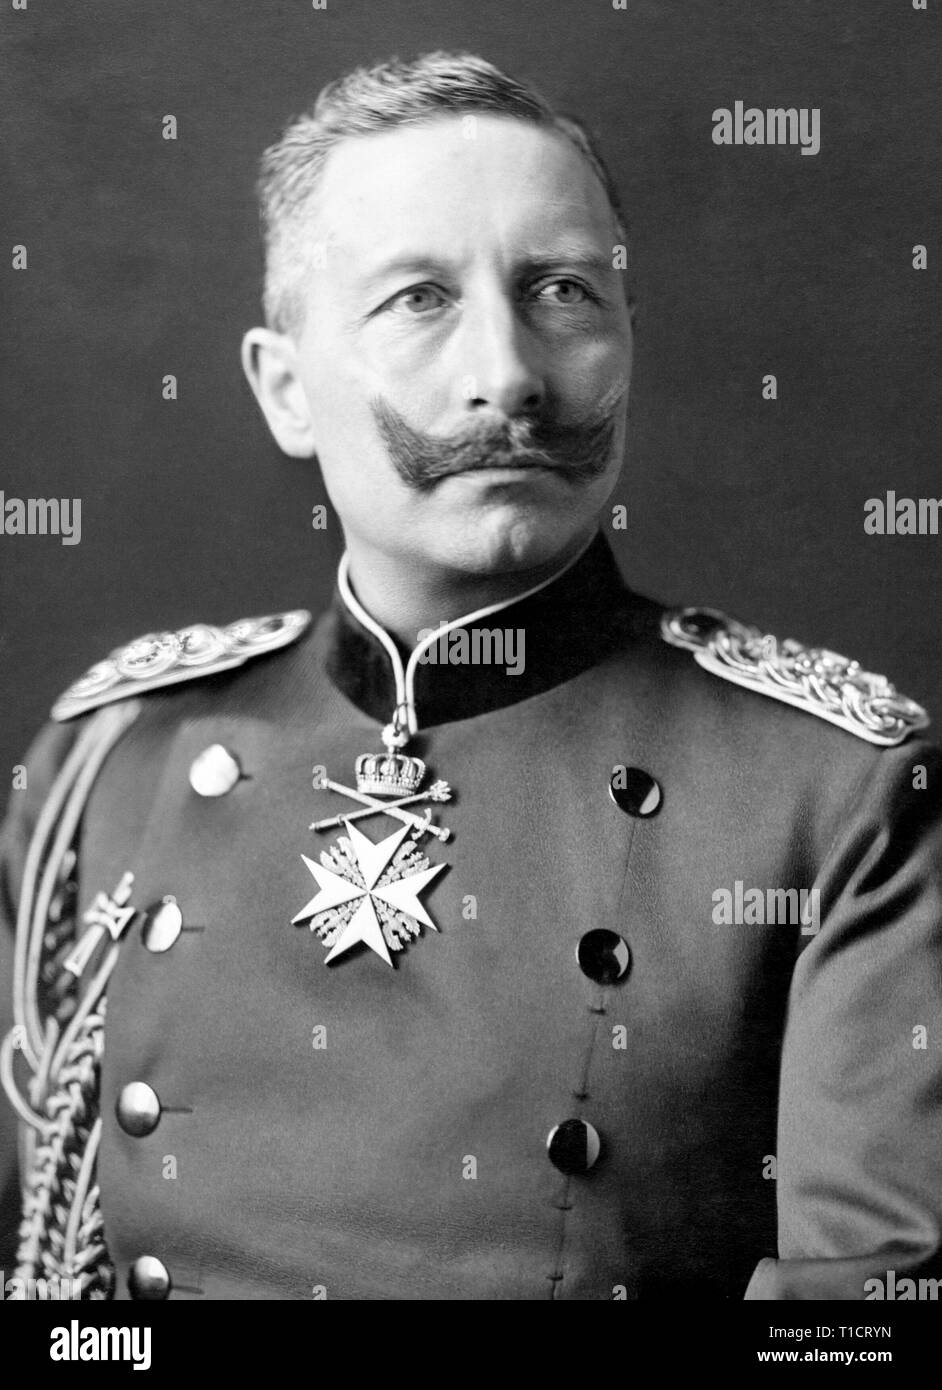 L'empereur Guillaume II, Guillaume II (1859 - 1941) dernier empereur allemand et roi de Prusse, régnant à partir de 15 juin 1888 jusqu'à son abdication le 9 novembre 1918 peu avant la défaite de l'Allemagne dans la Première Guerre mondiale Banque D'Images